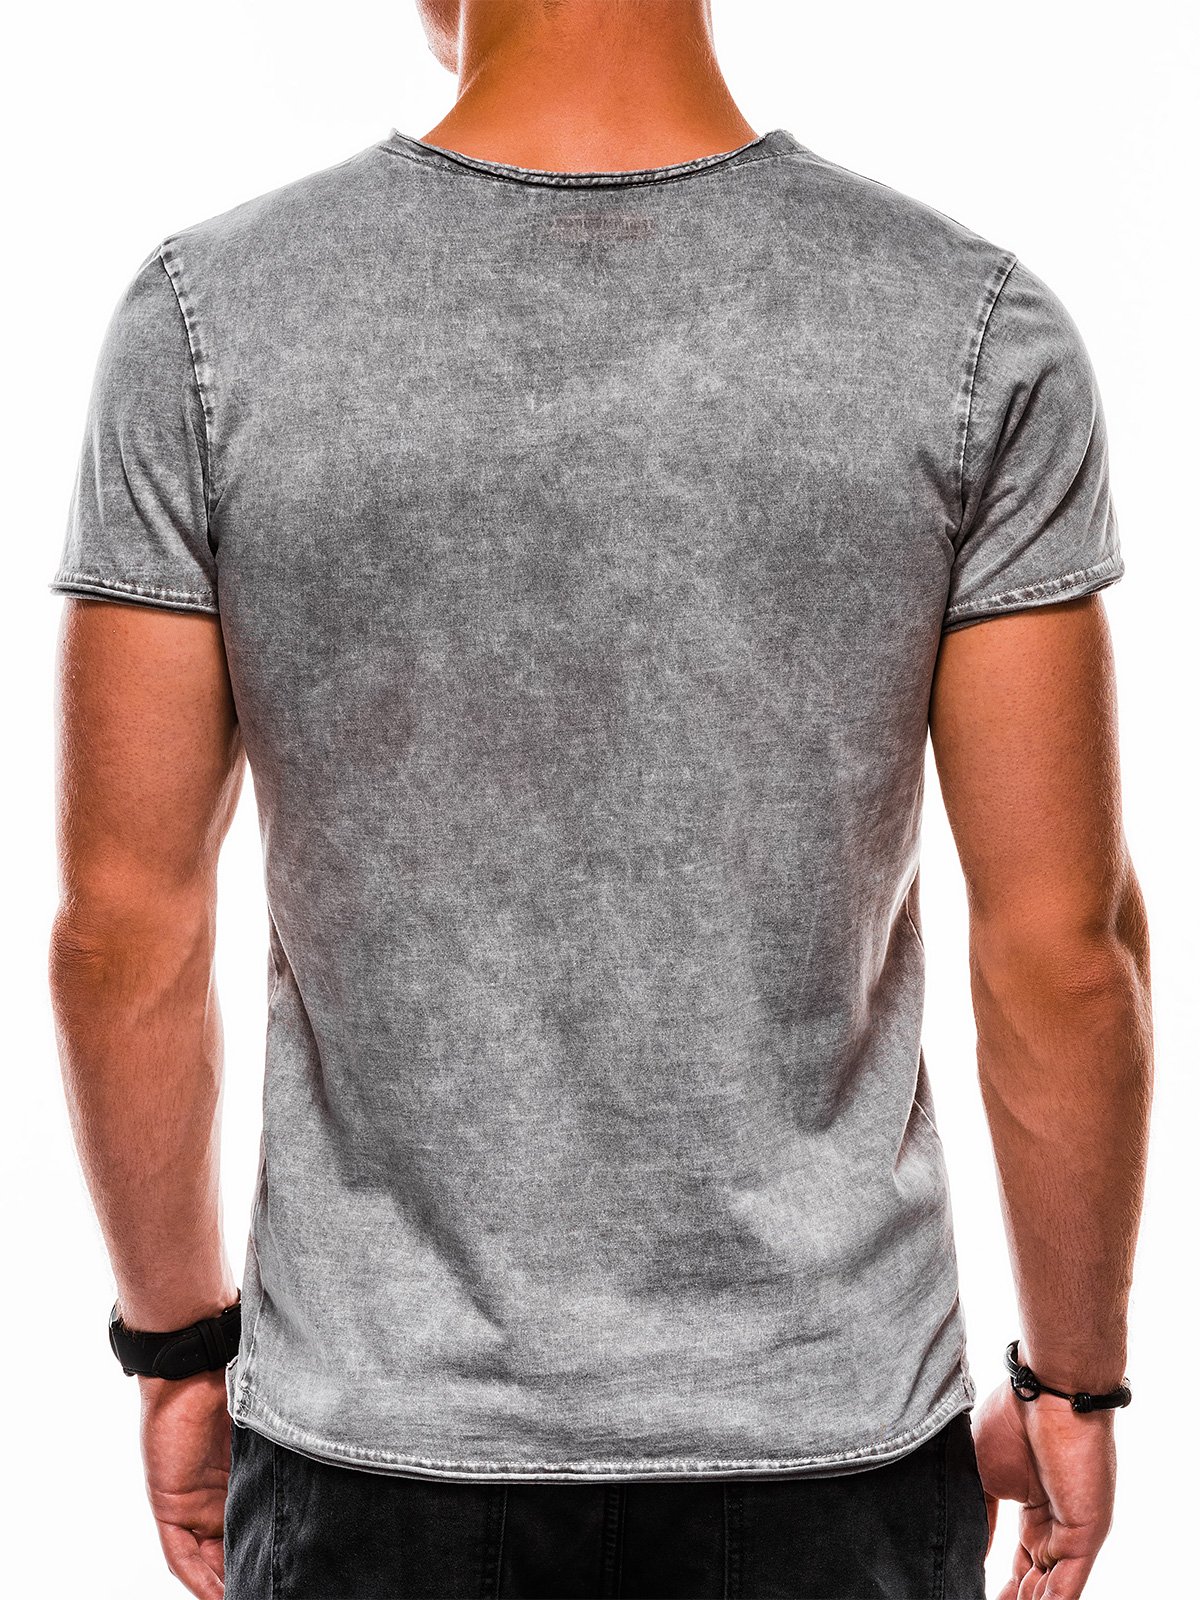 Men's plain t-shirt S1050 - grey | MODONE wholesale - Clothing For Men